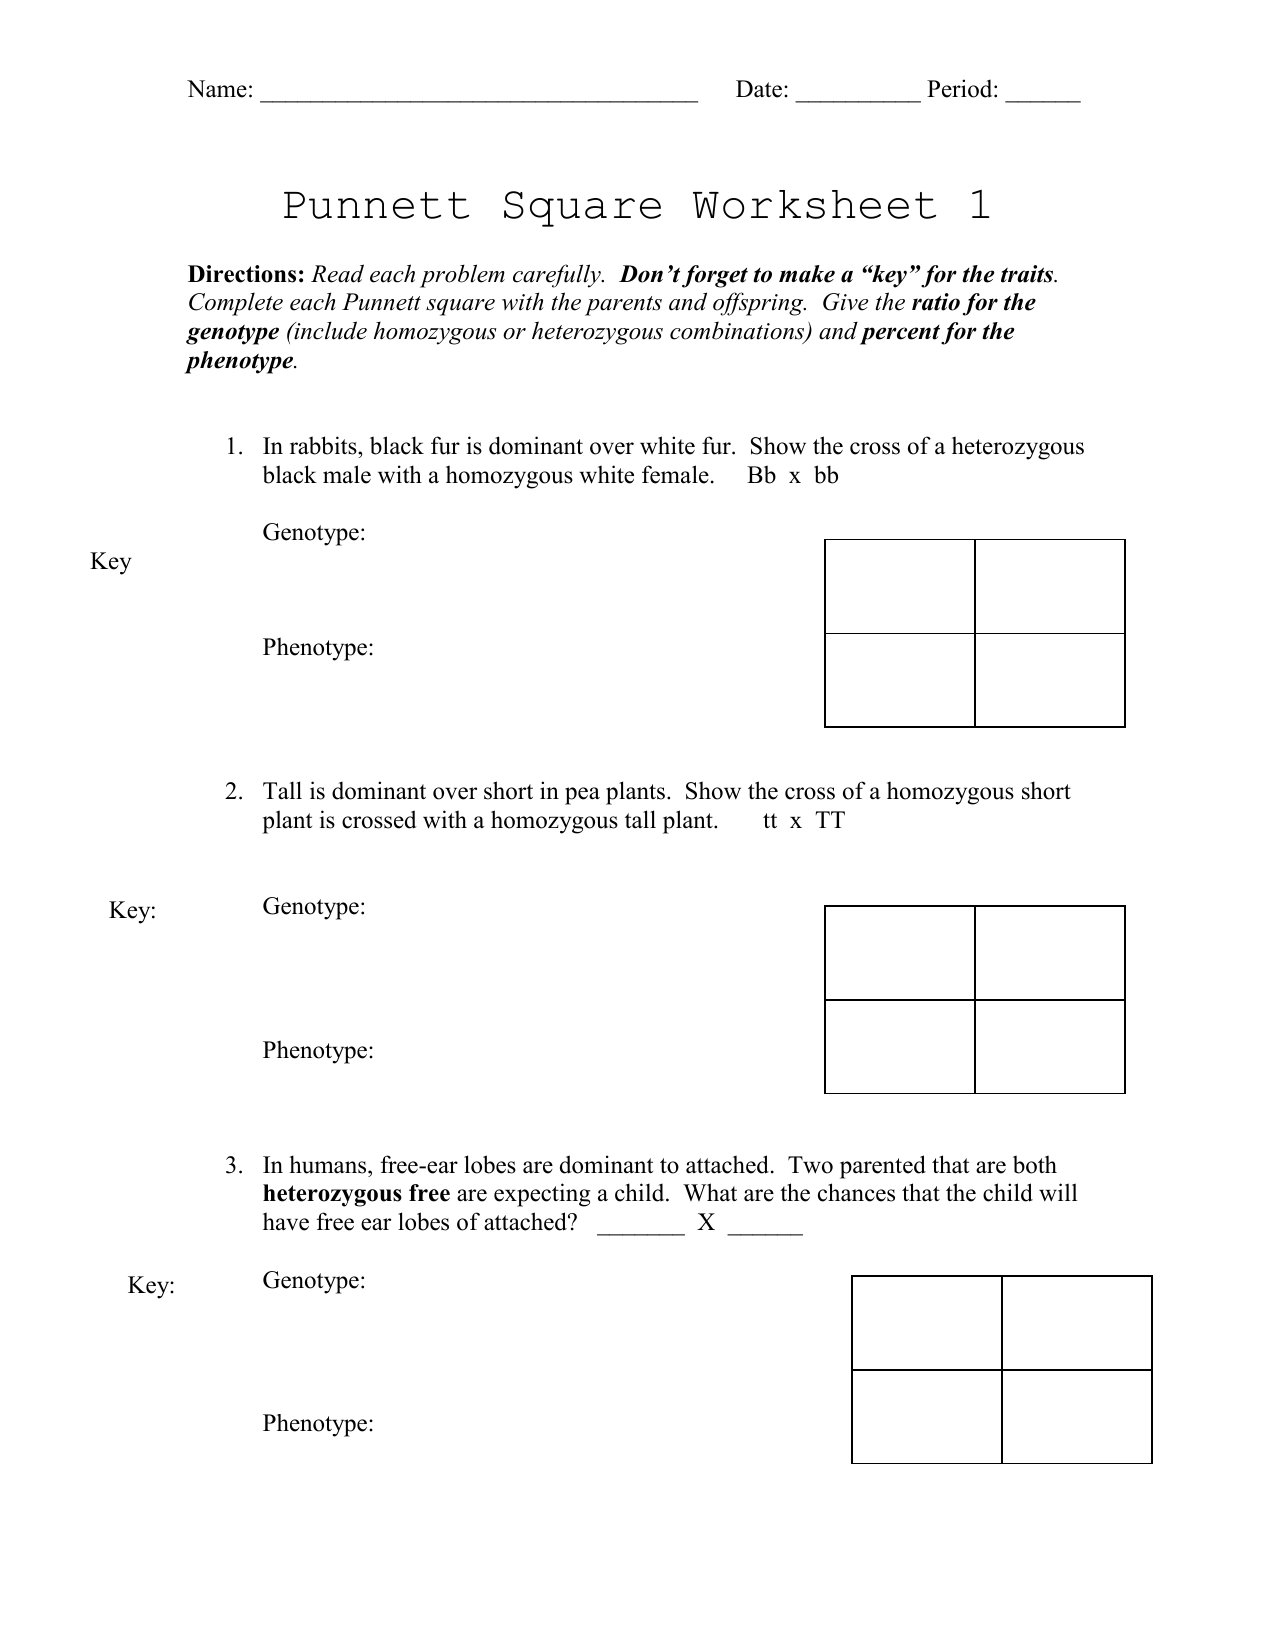 punnett-square-worksheet-1-db-excel